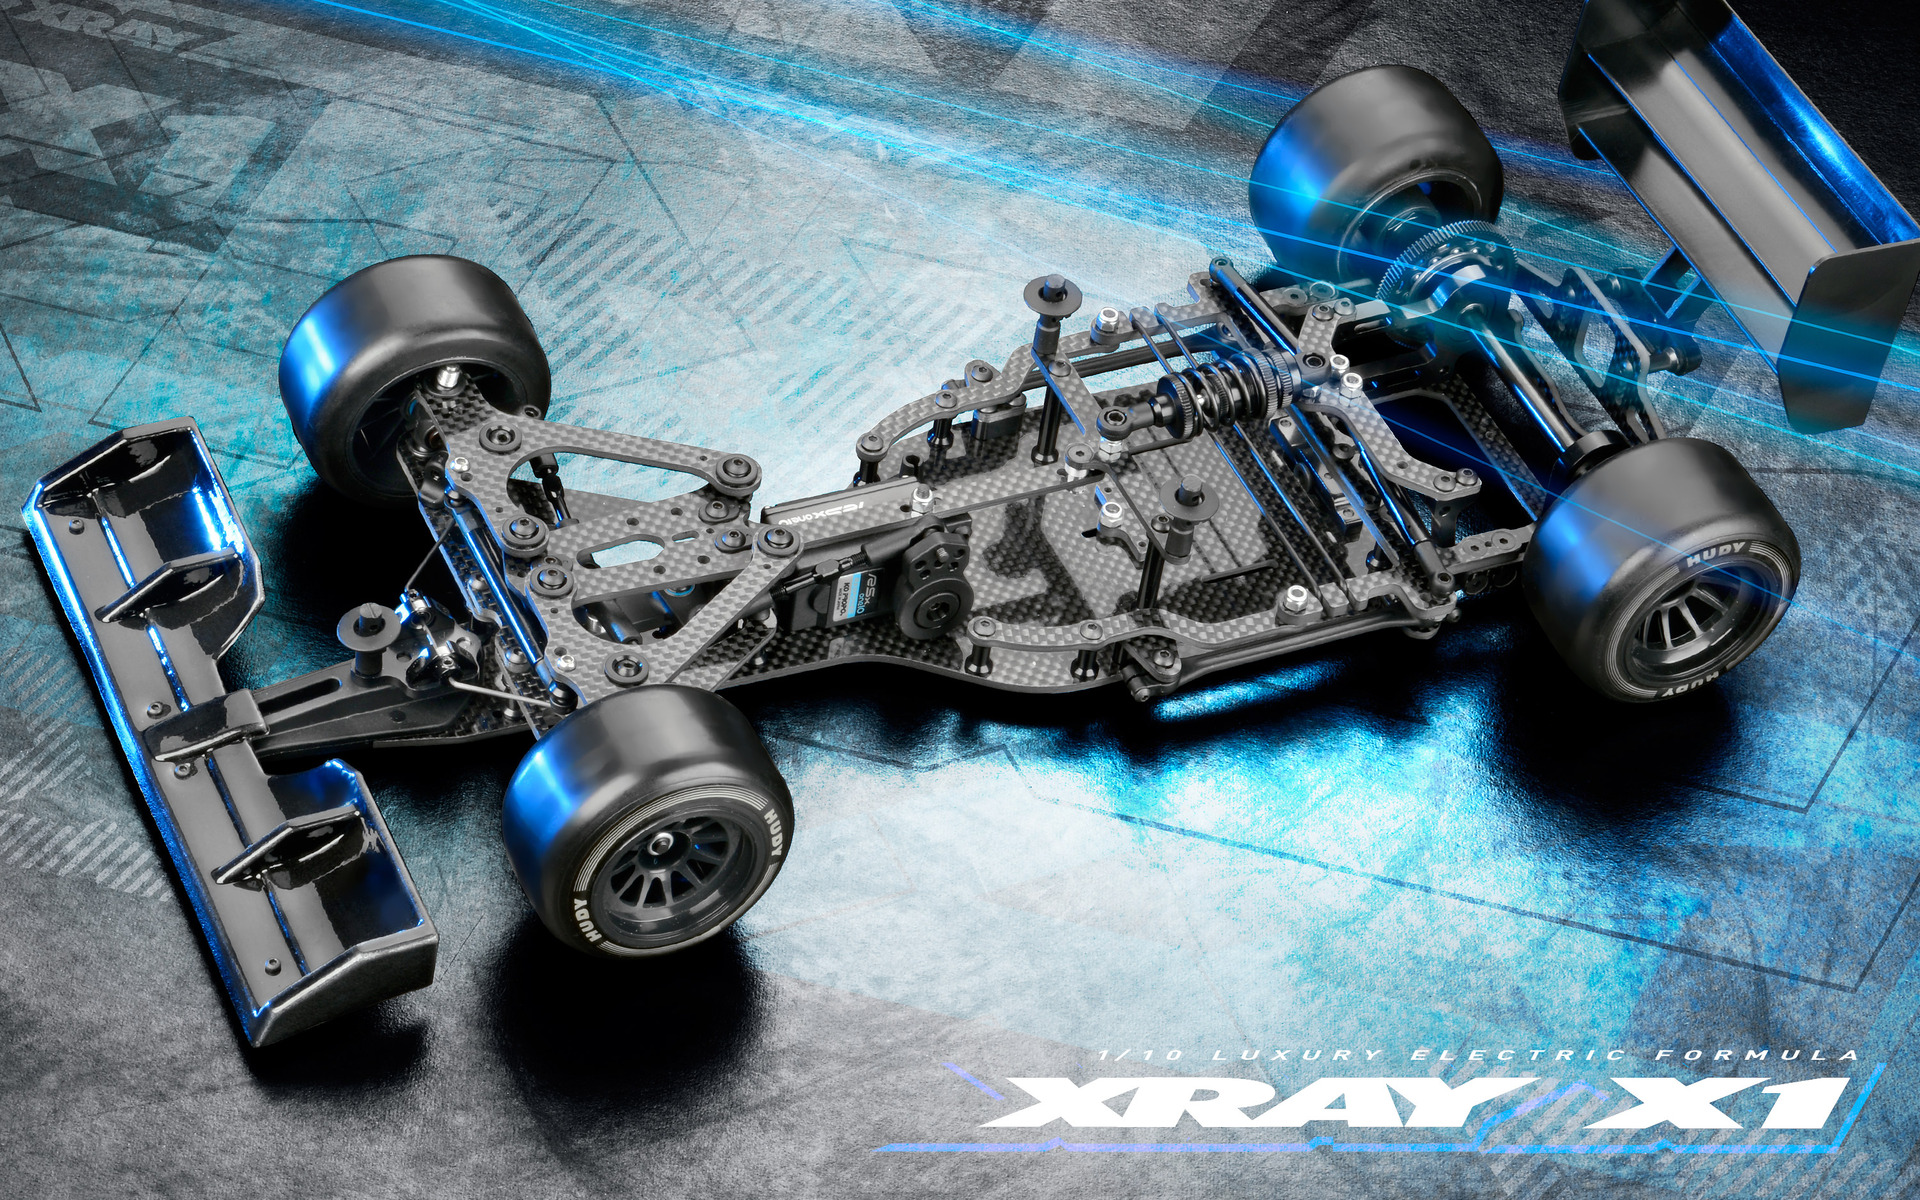 XRAY X1 ’21 luxury formula car announced